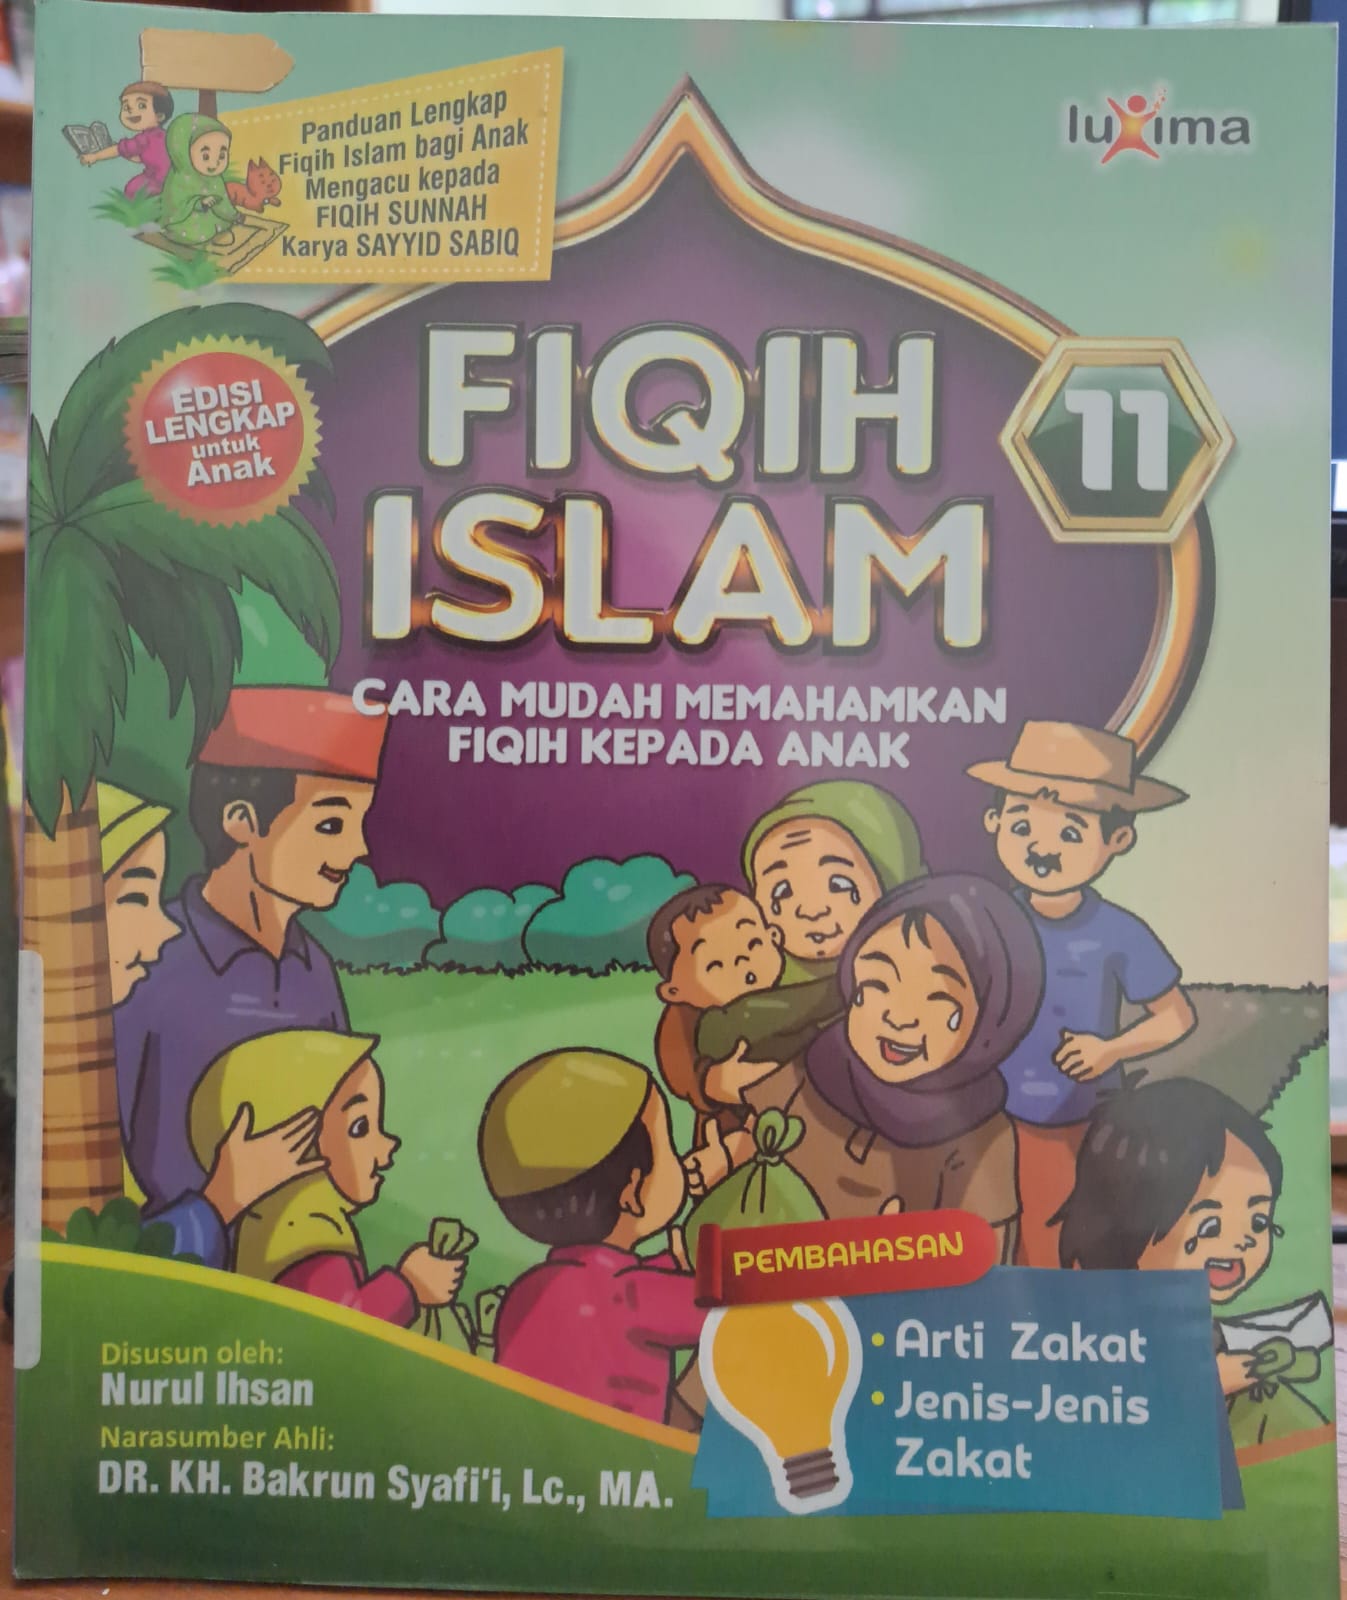 Fiqih islam jilid 11 :  Cara mudah memahamkan fiqih kepada anak